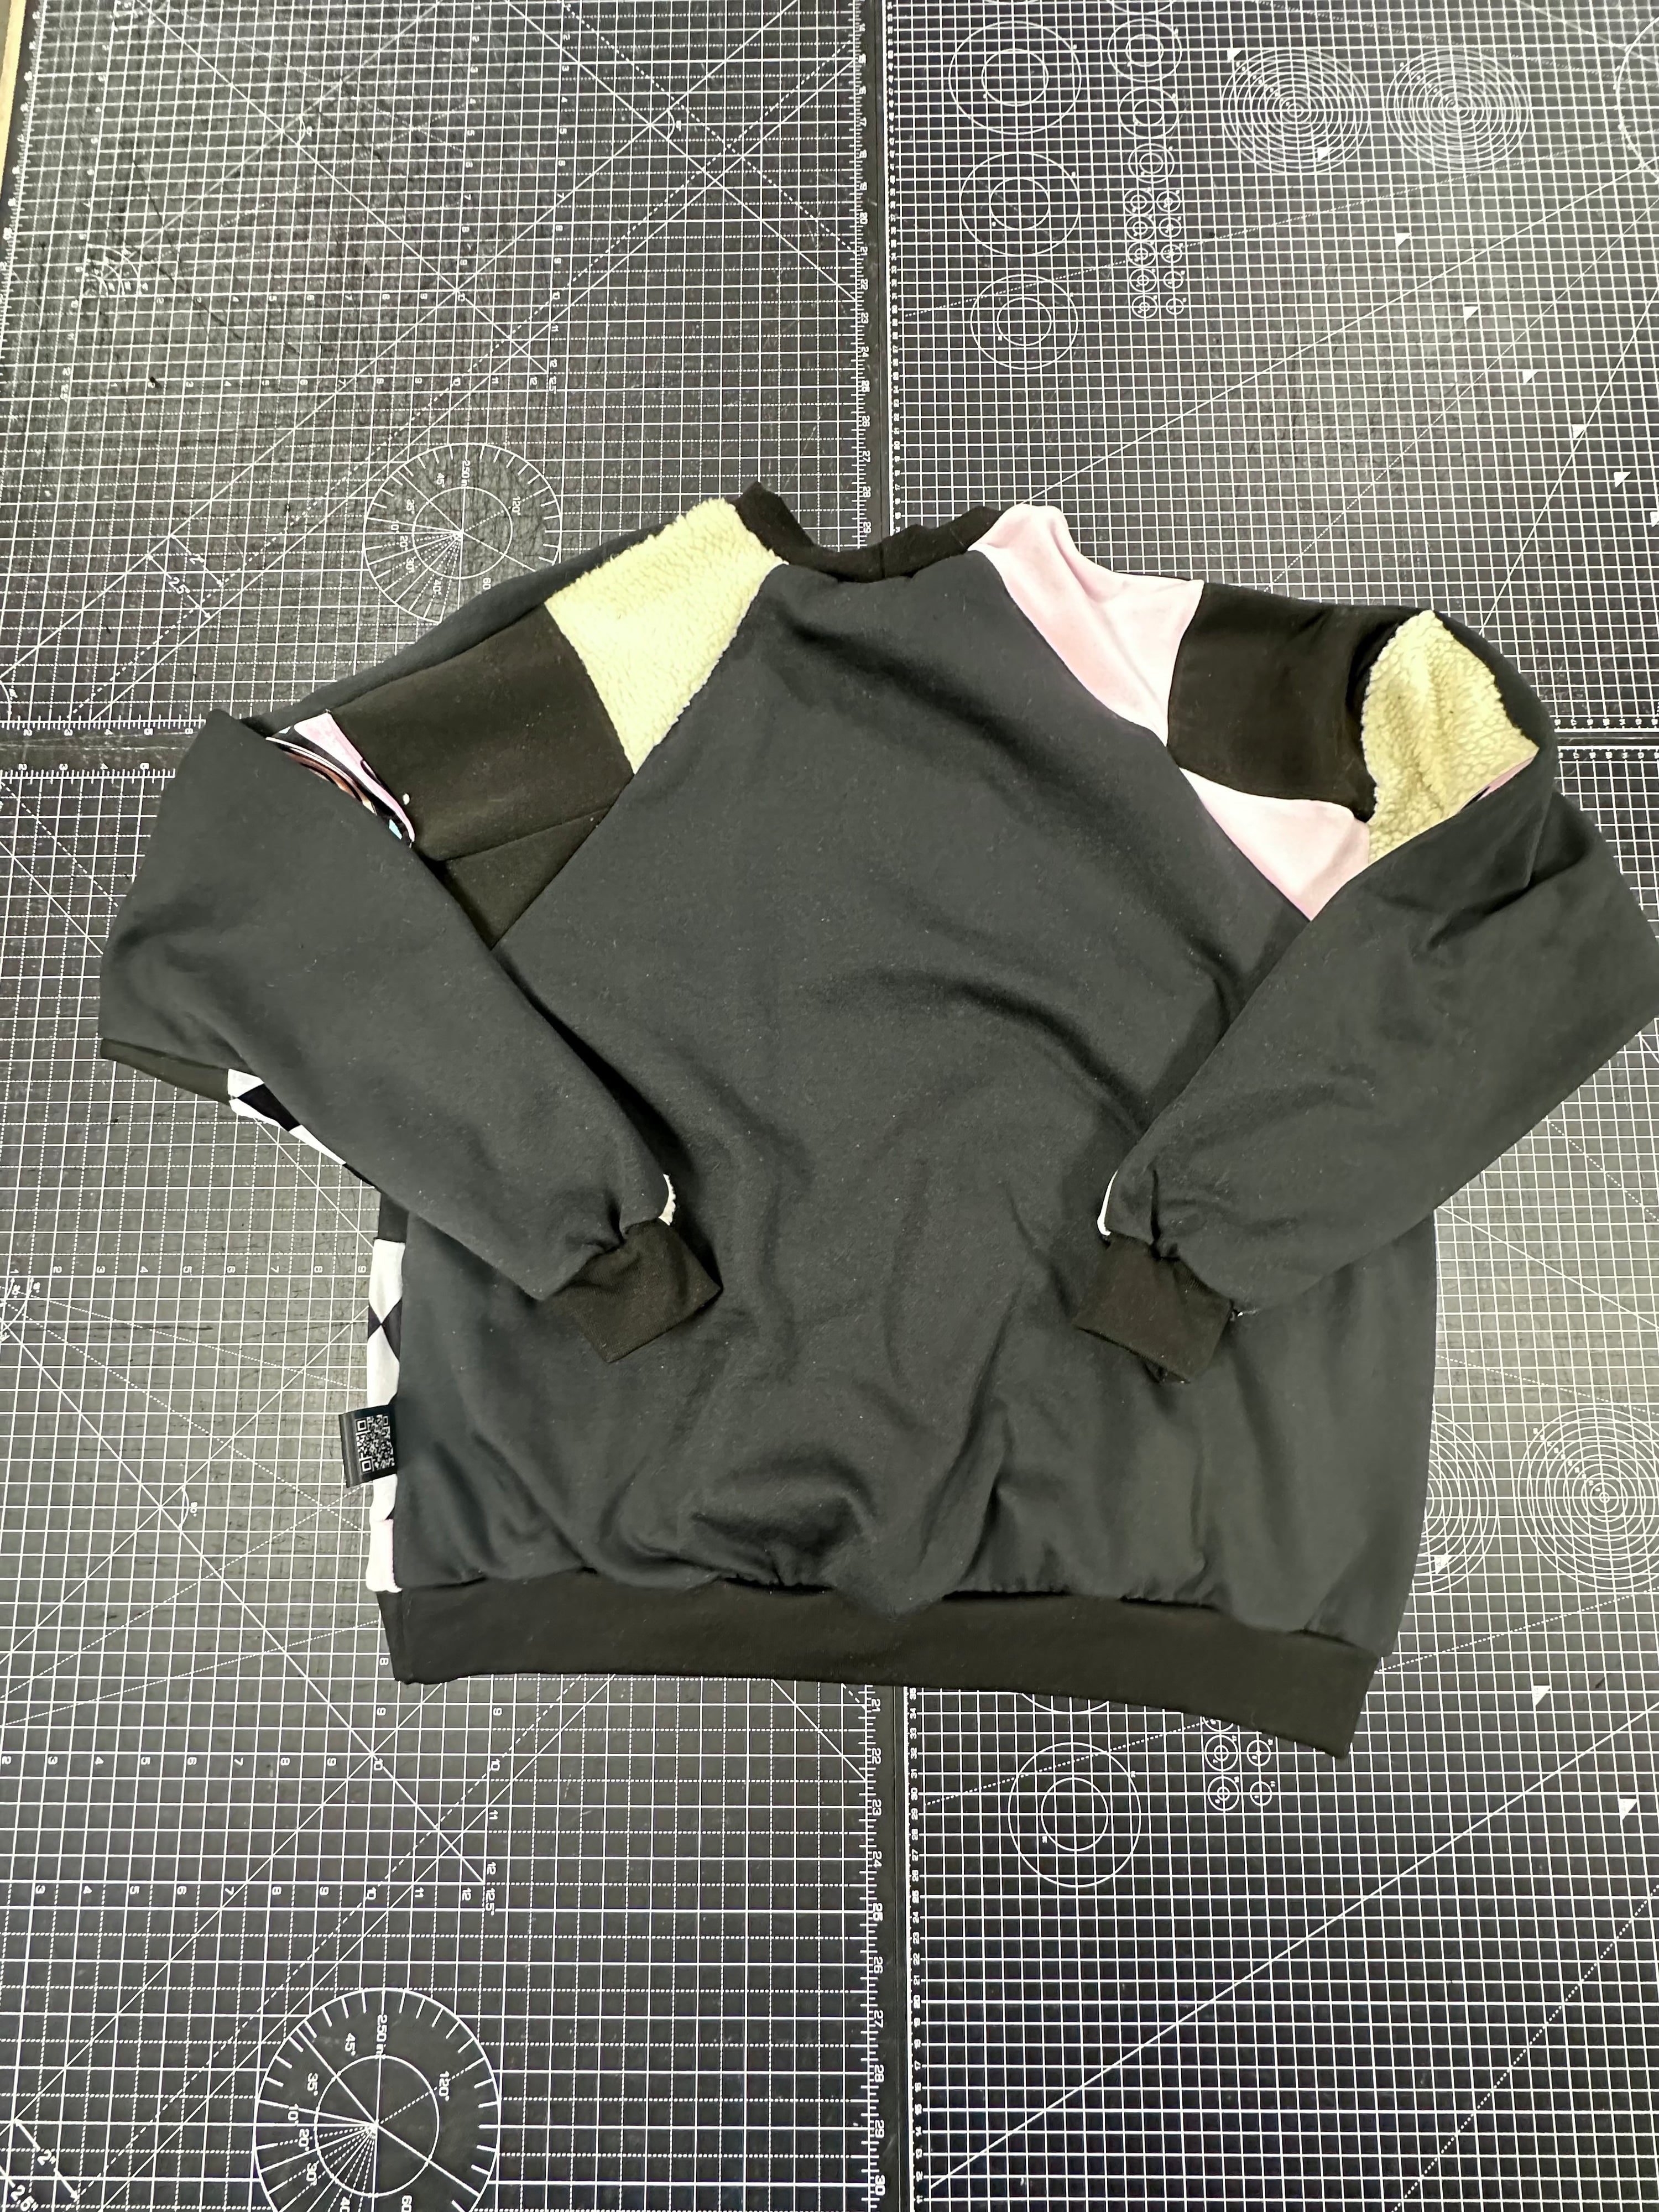 Baby Pink X Pastel Patchwork Sweatshirt (XL)